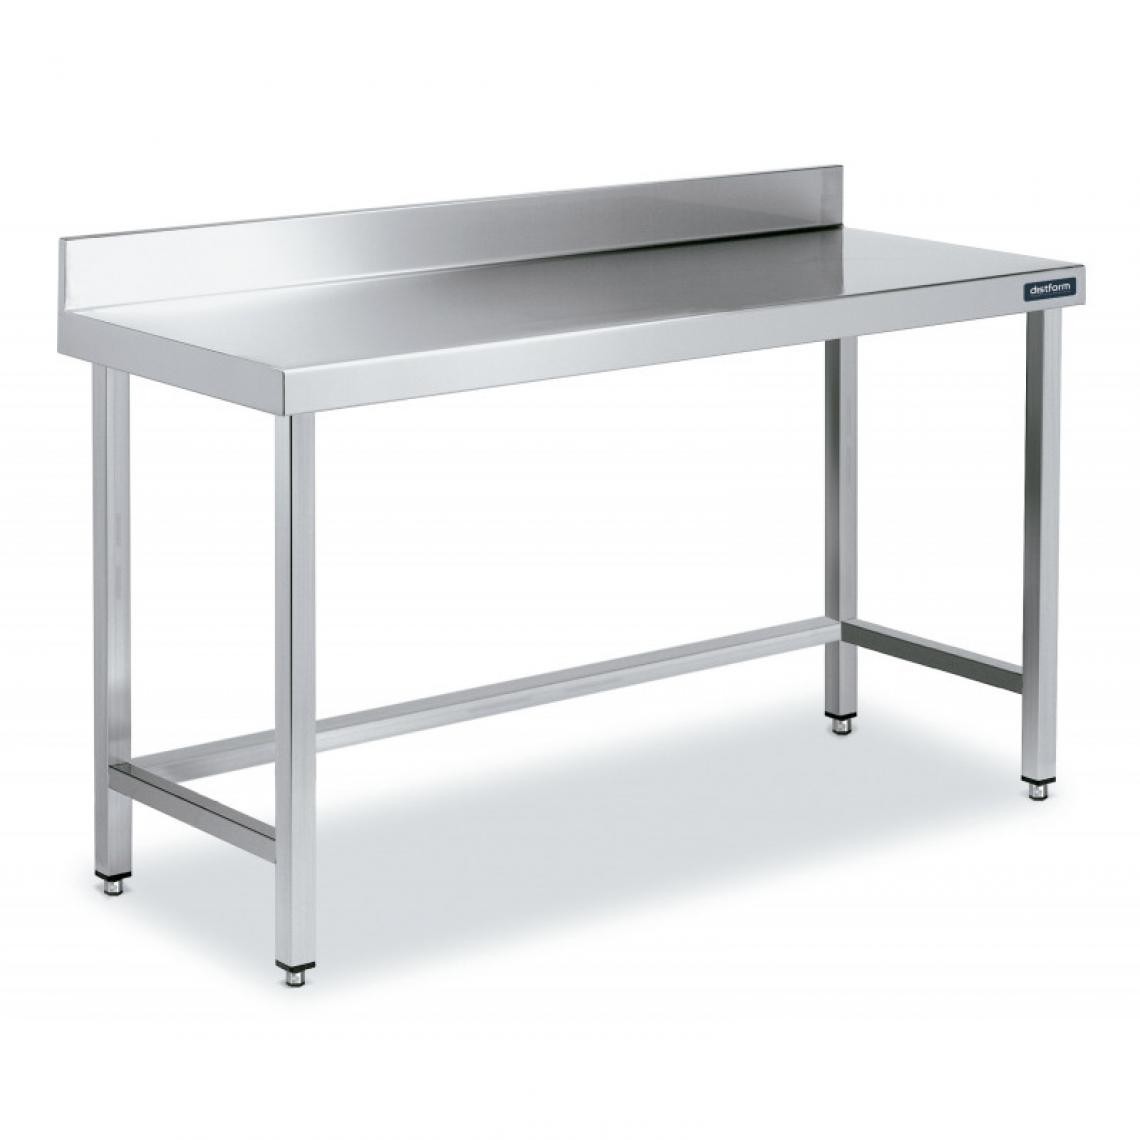 DISTFORM - Table Adossée en Inox avec Renforts Profondeur 700 mm - Distform - Acier inoxydable1800x700 - Tables à manger